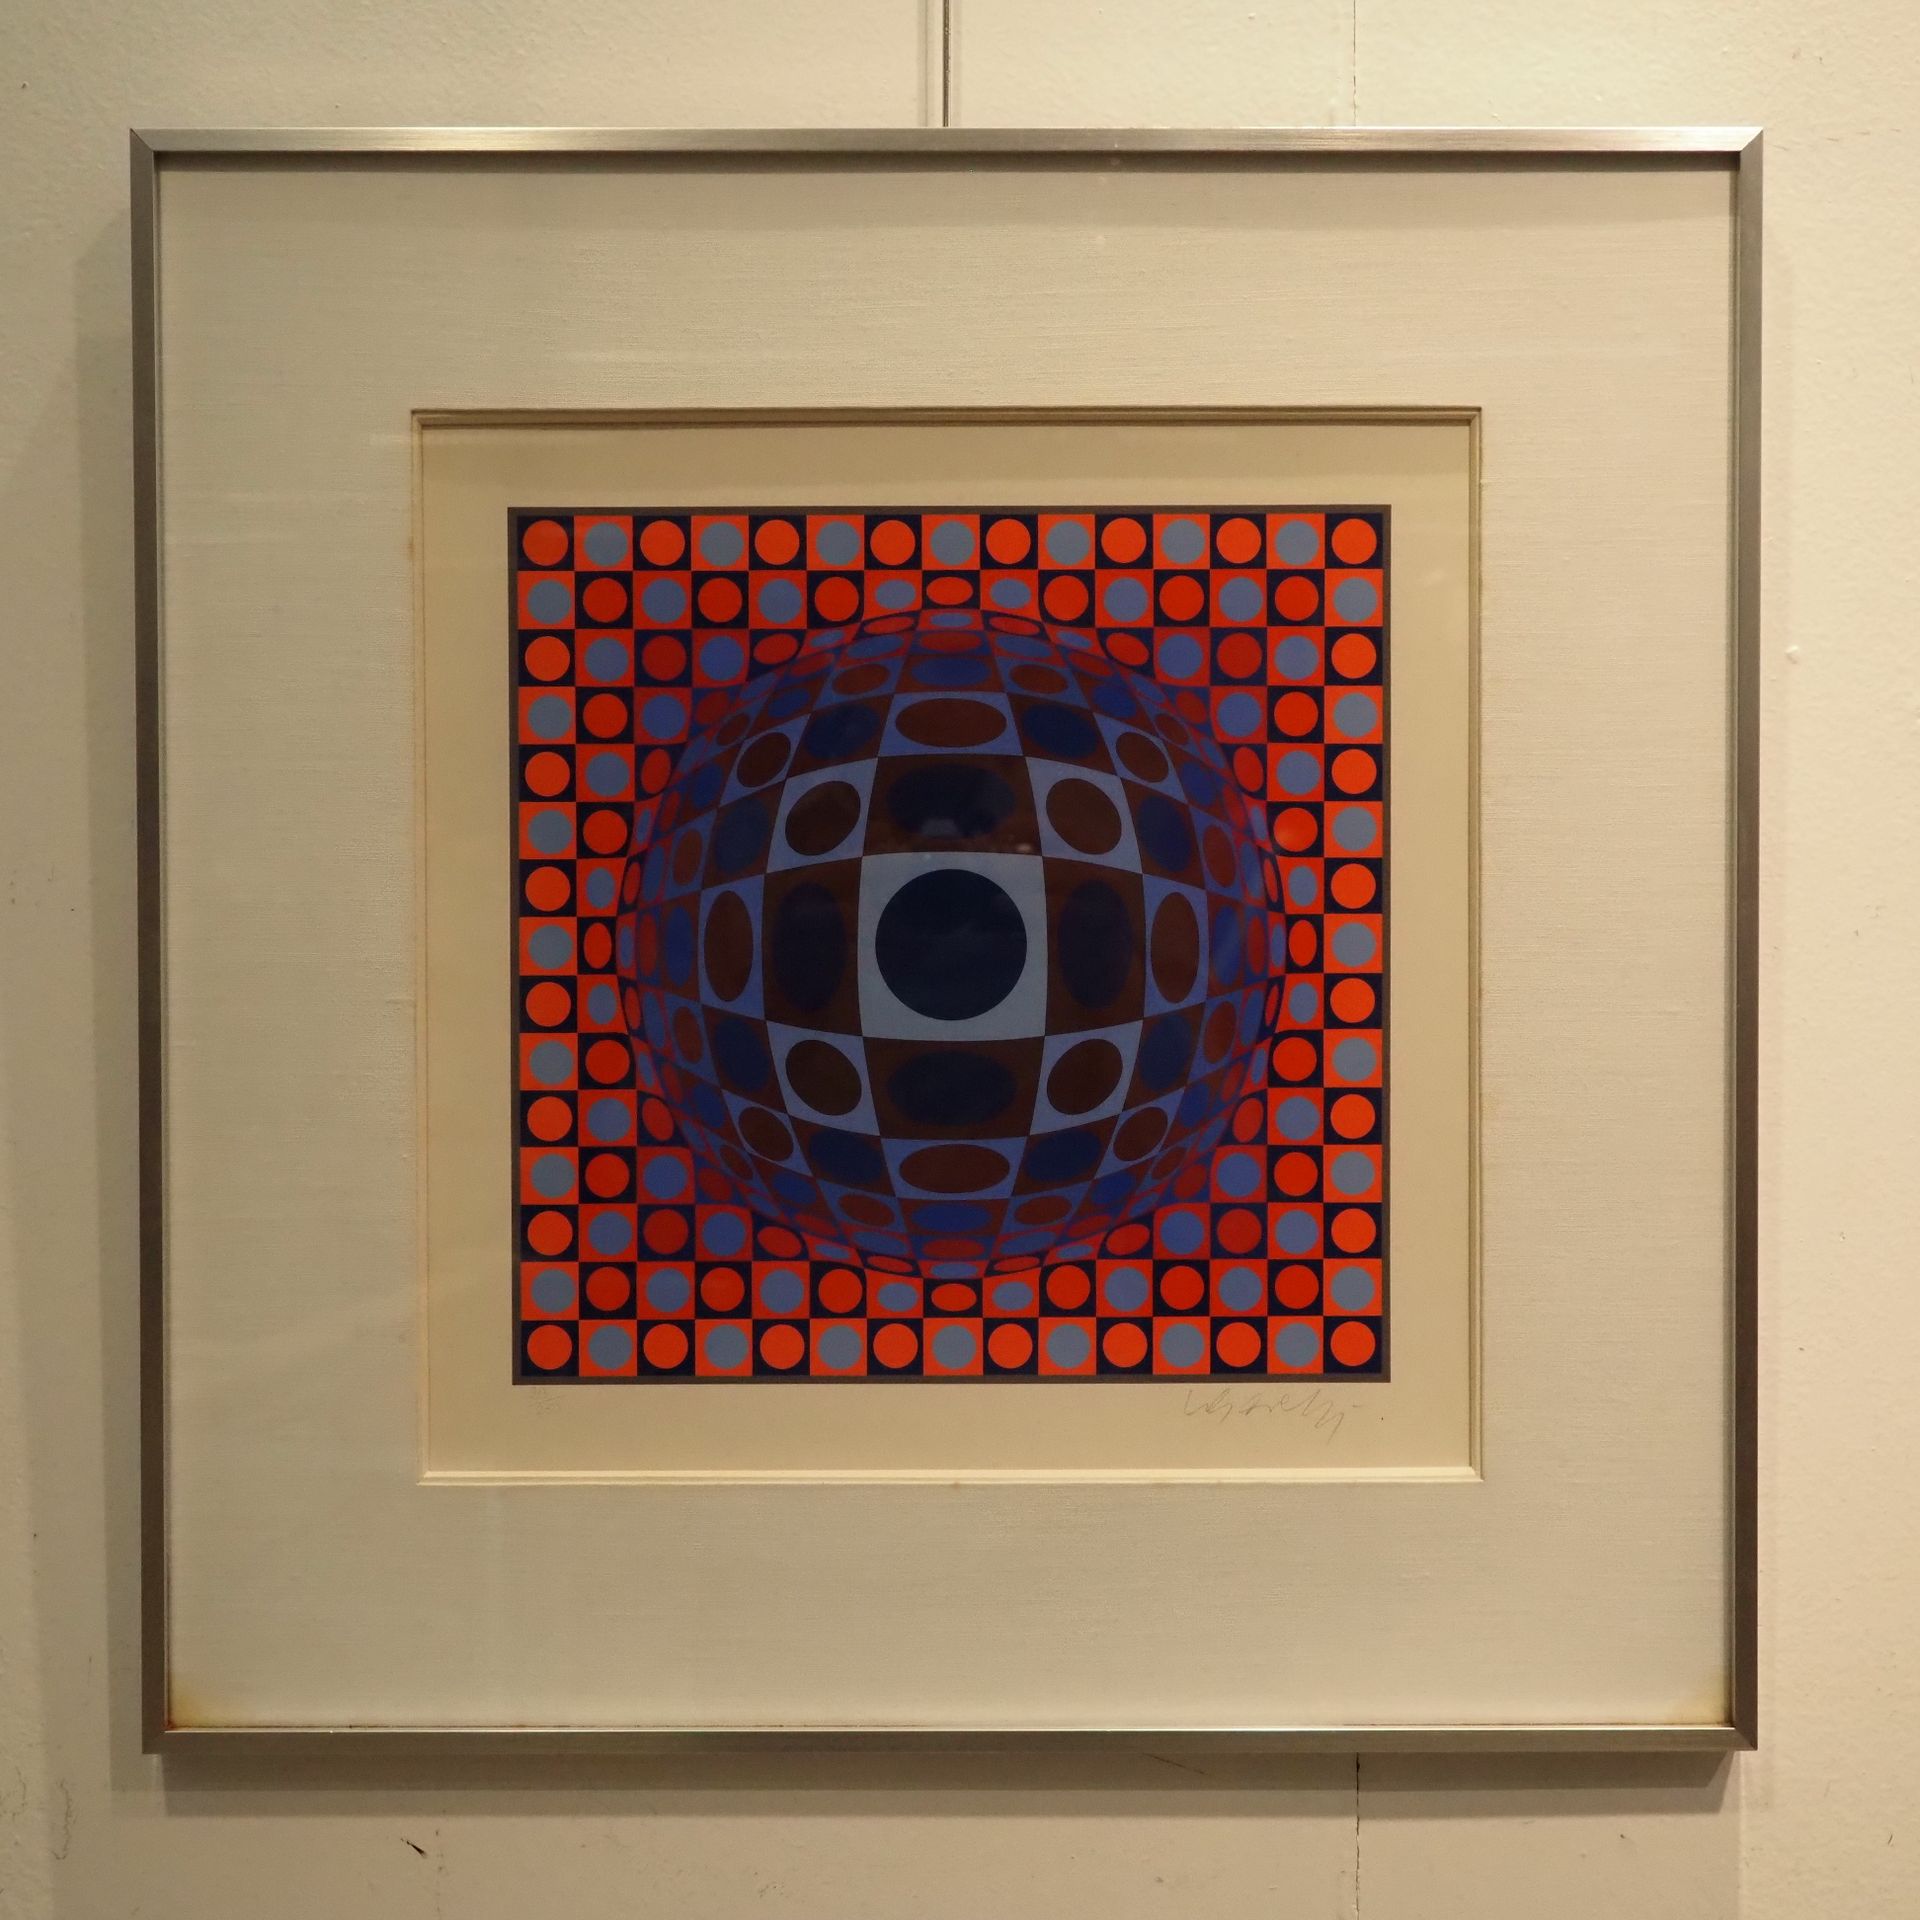 Null 瓦萨雷利-维克多（1906-1997）:动感艺术，织女星彩色丝网印刷，右边缘有签名，编号213/250，玻璃框，图片尺寸：30,5 x 30,5 cm